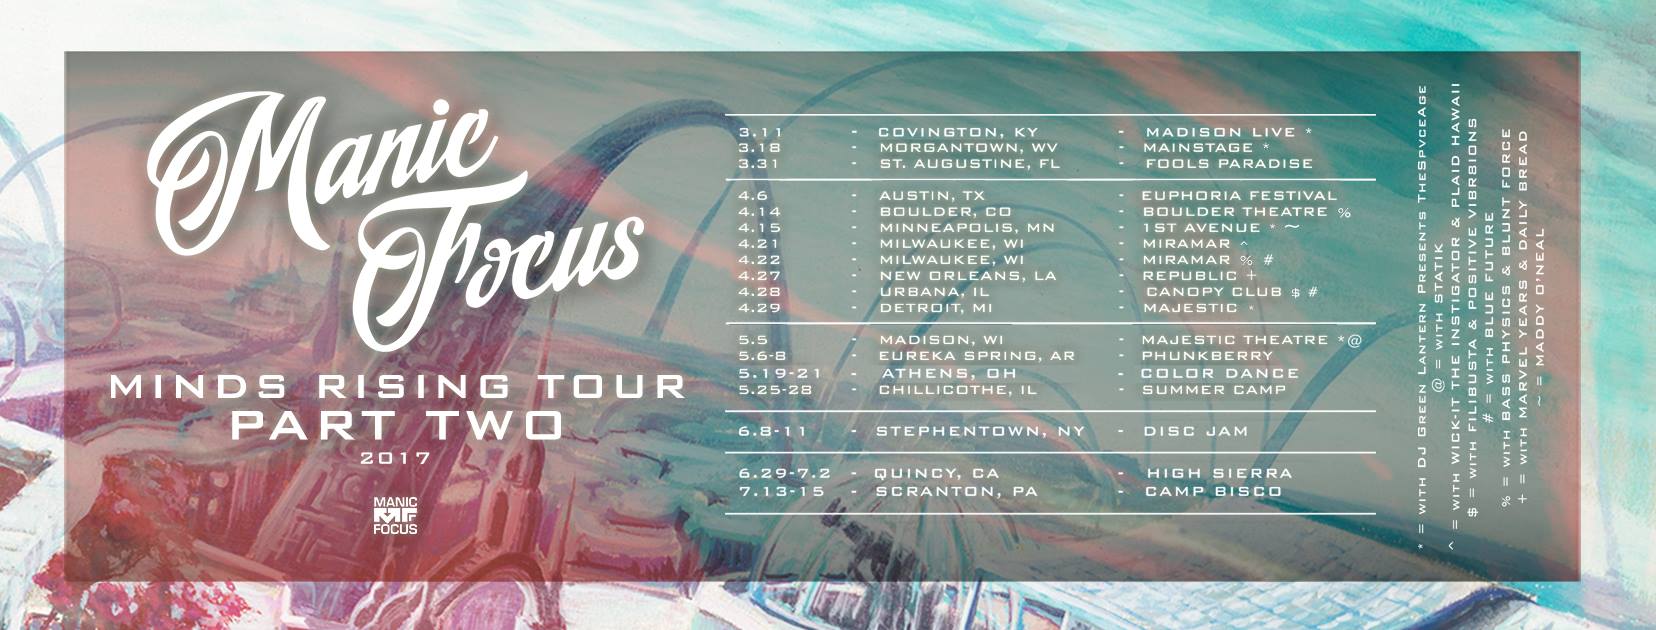 Manic Focus New Single + 2017 Tour Dates